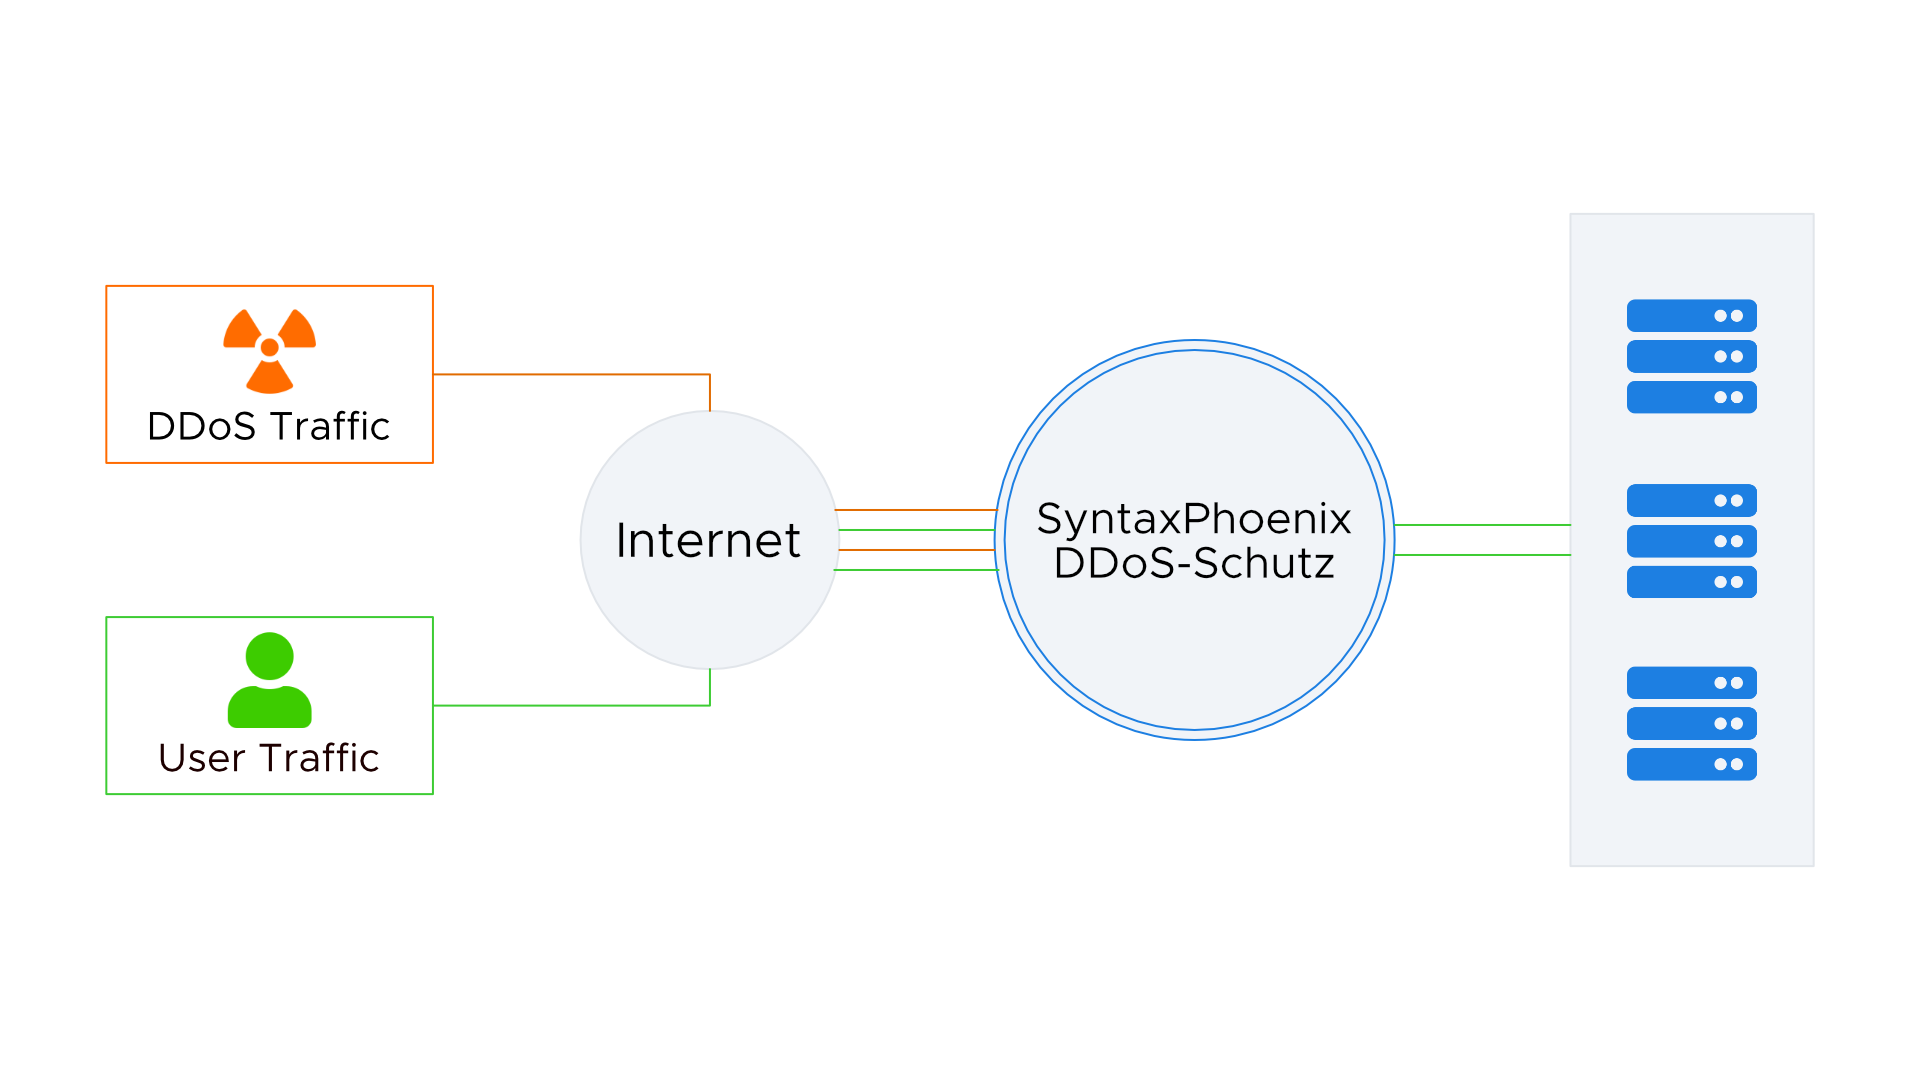 Diagramm mit Traffic-Fluss des SyntaxPhoenix Security-Shield. Nutzer und DDoS-Traffic sammeln sich im Internet und kommen gemeinsam an dem SyntaxPhoenix Security-Shield an. Hier kommt aber nur der Traffic der Nutzer durch zu den Servern.